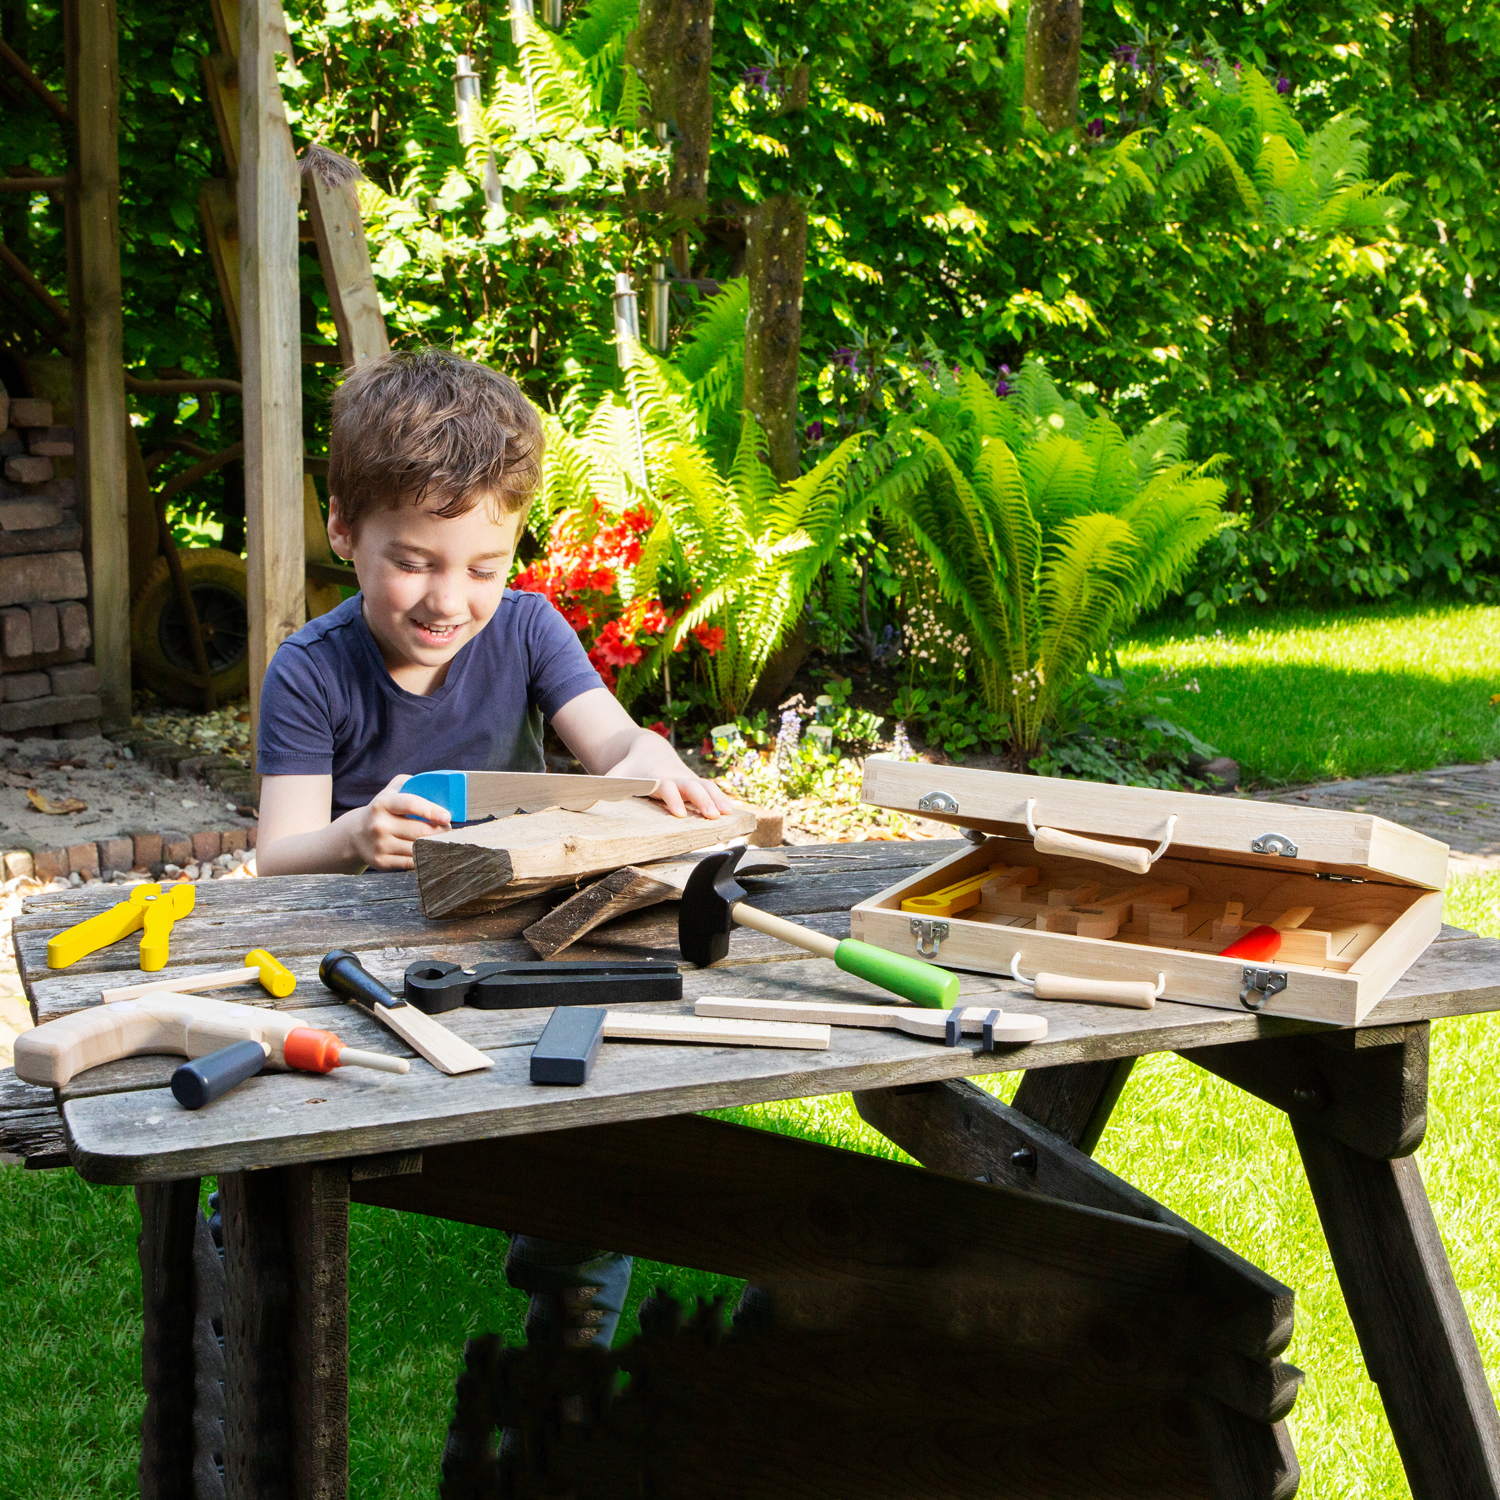 Werkzeugkasten mit Werkzeug aus Holz groß 12 Teile für Kinder